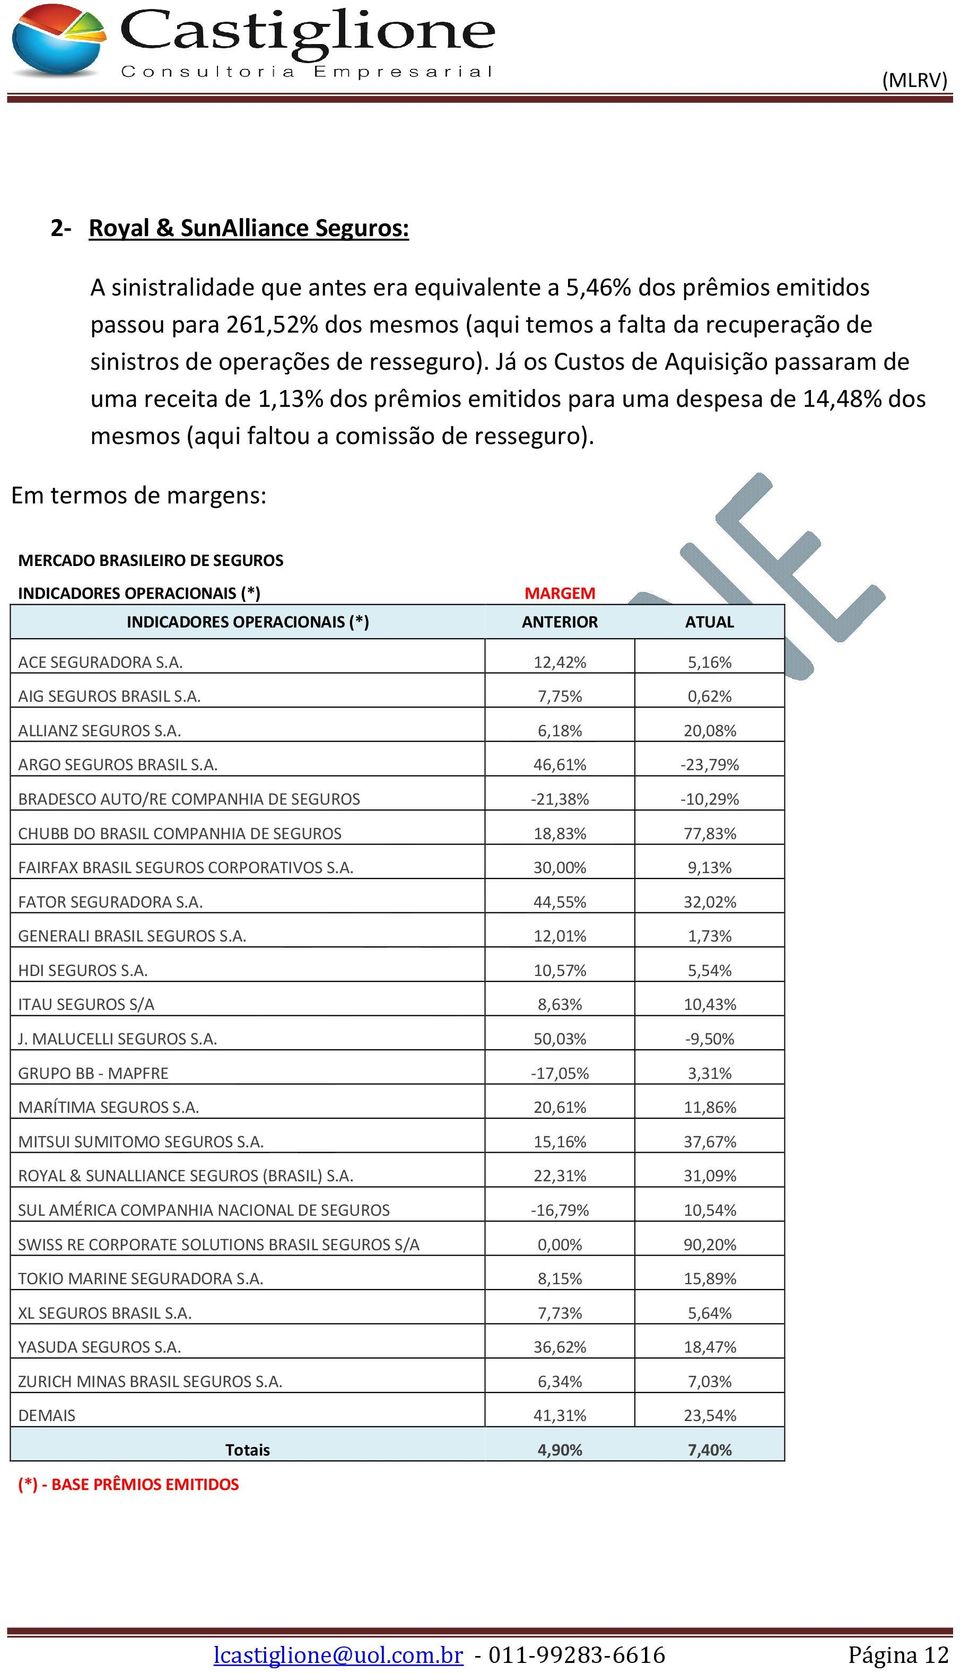 Em termos de margens: MERCADO BRASILEIRO DE SEGUROS INDICADORES OPERACIONAIS (*) MARGEM INDICADORES OPERACIONAIS (*) ANTERIOR ATUAL ACE SEGURADORA S.A. 12,42% 5,16% AIG SEGUROS BRASIL S.A. 7,75% 0,62% ALLIANZ SEGUROS S.